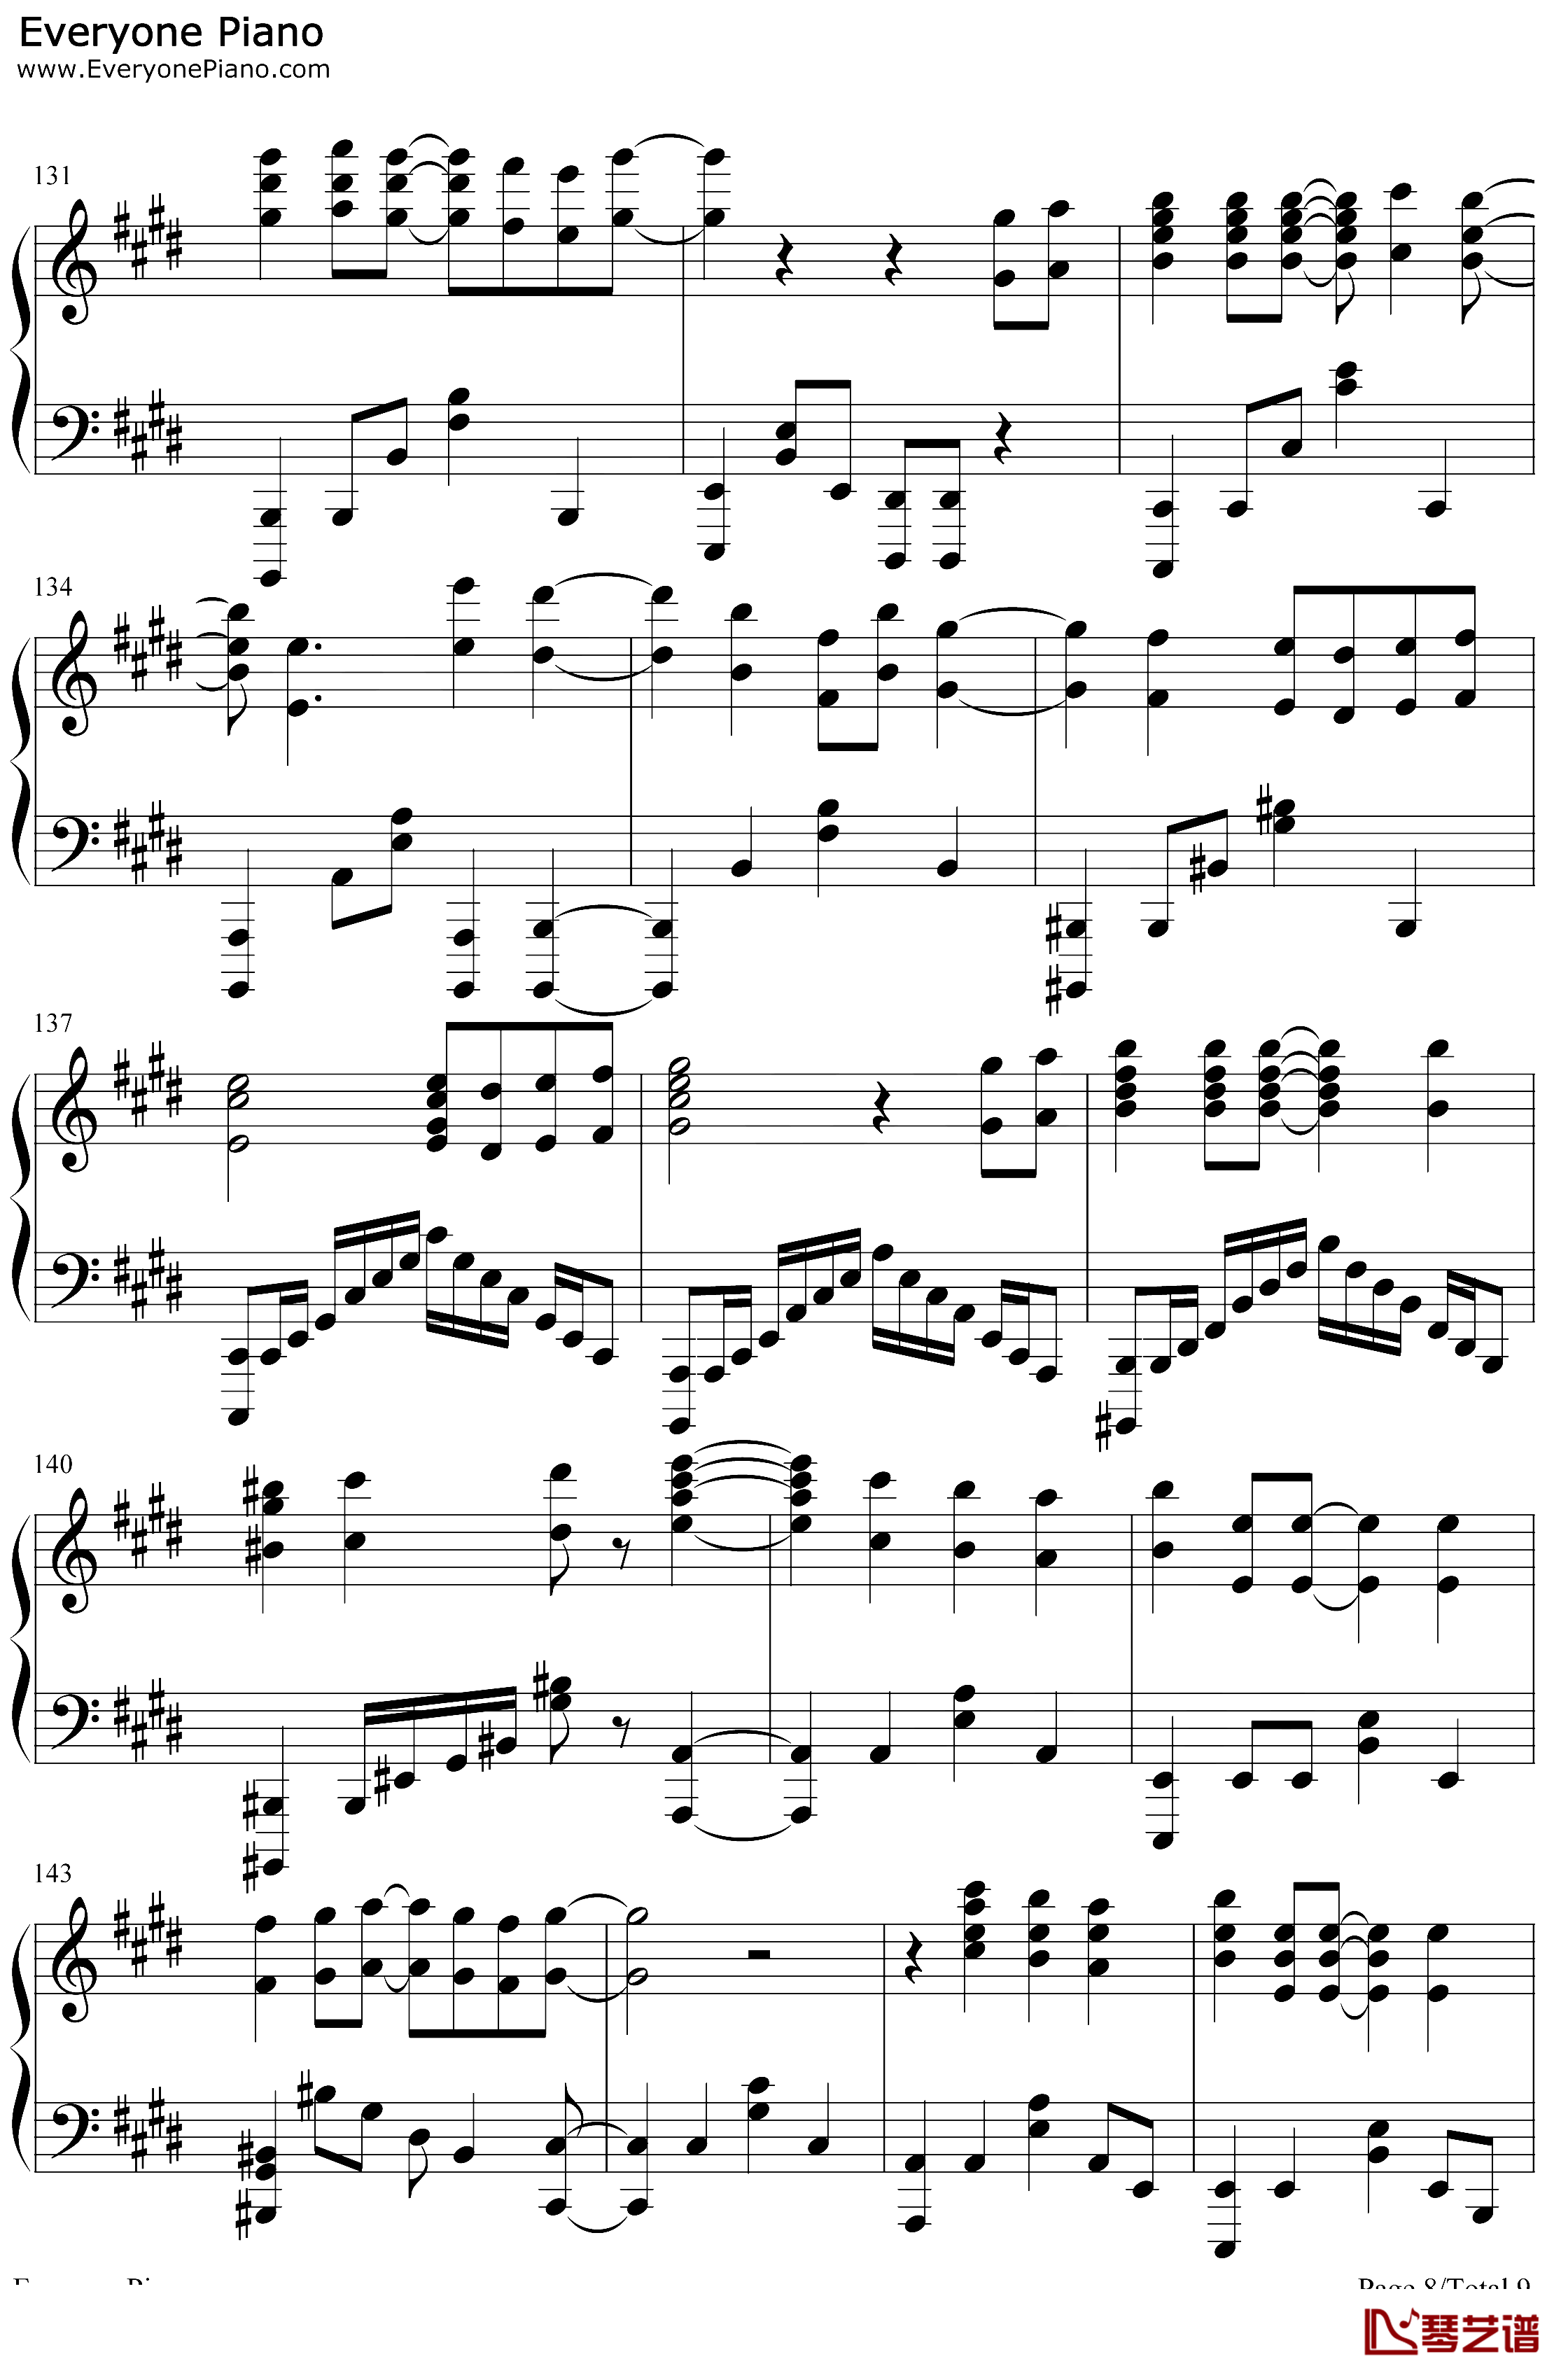 炎钢琴谱-LiSA-鬼灭之刃无限列车篇主题曲8